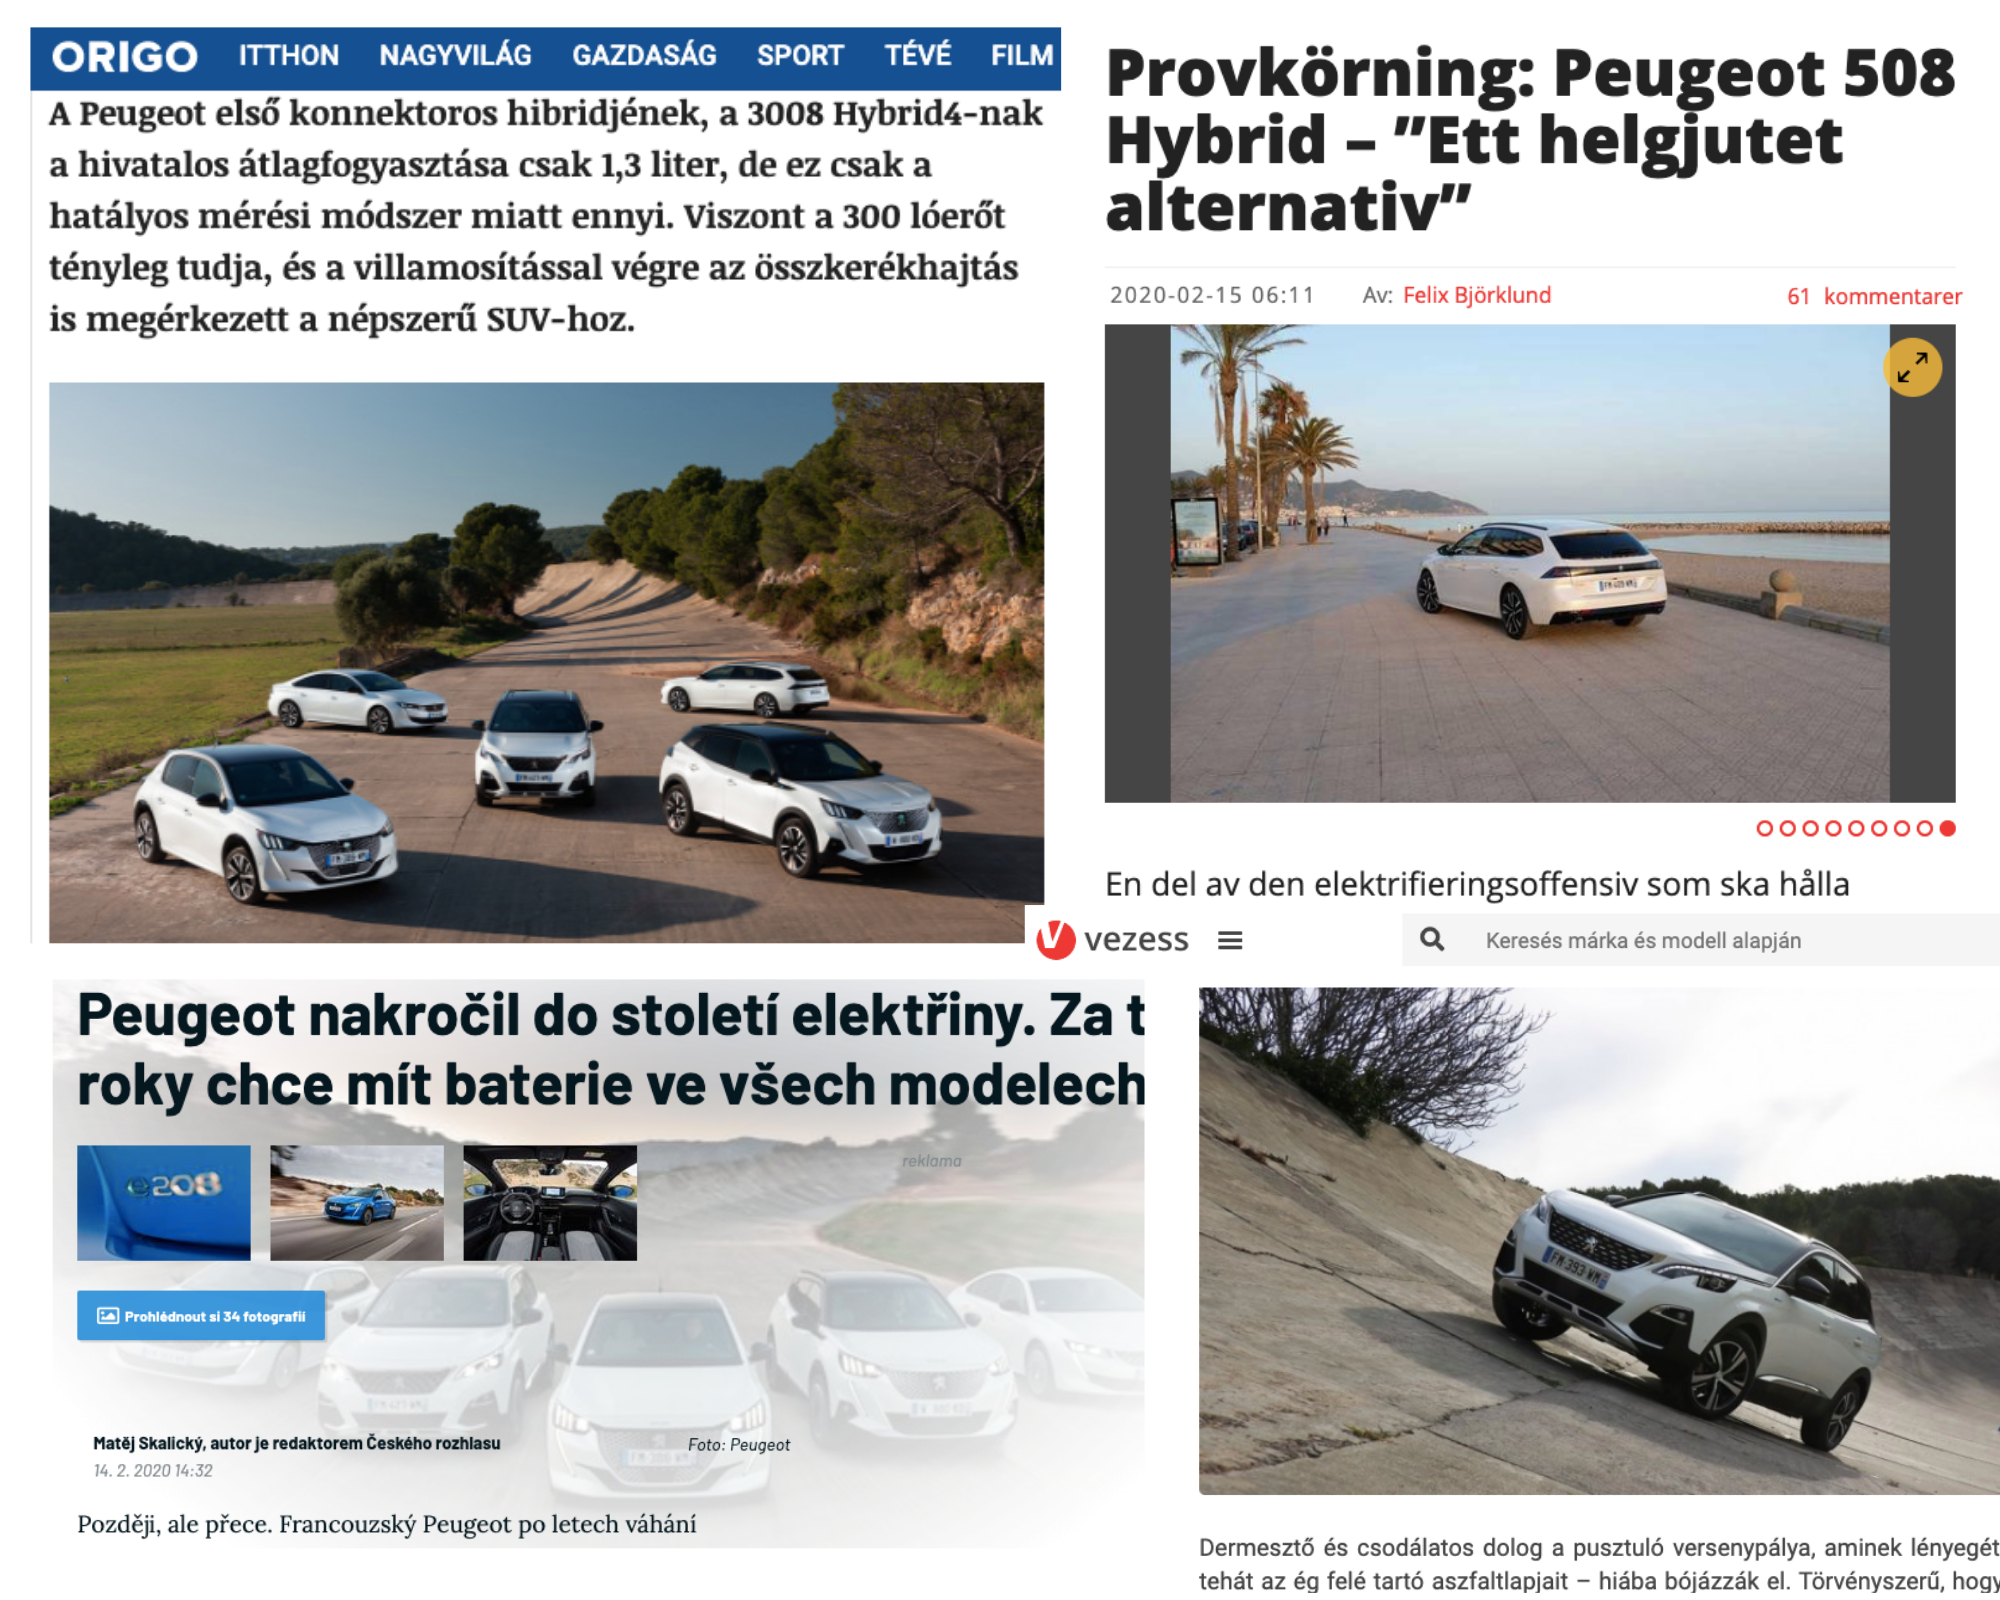 La prensa internacional conoce la gama híbrida de Peugeot desde el Autòdrom  7